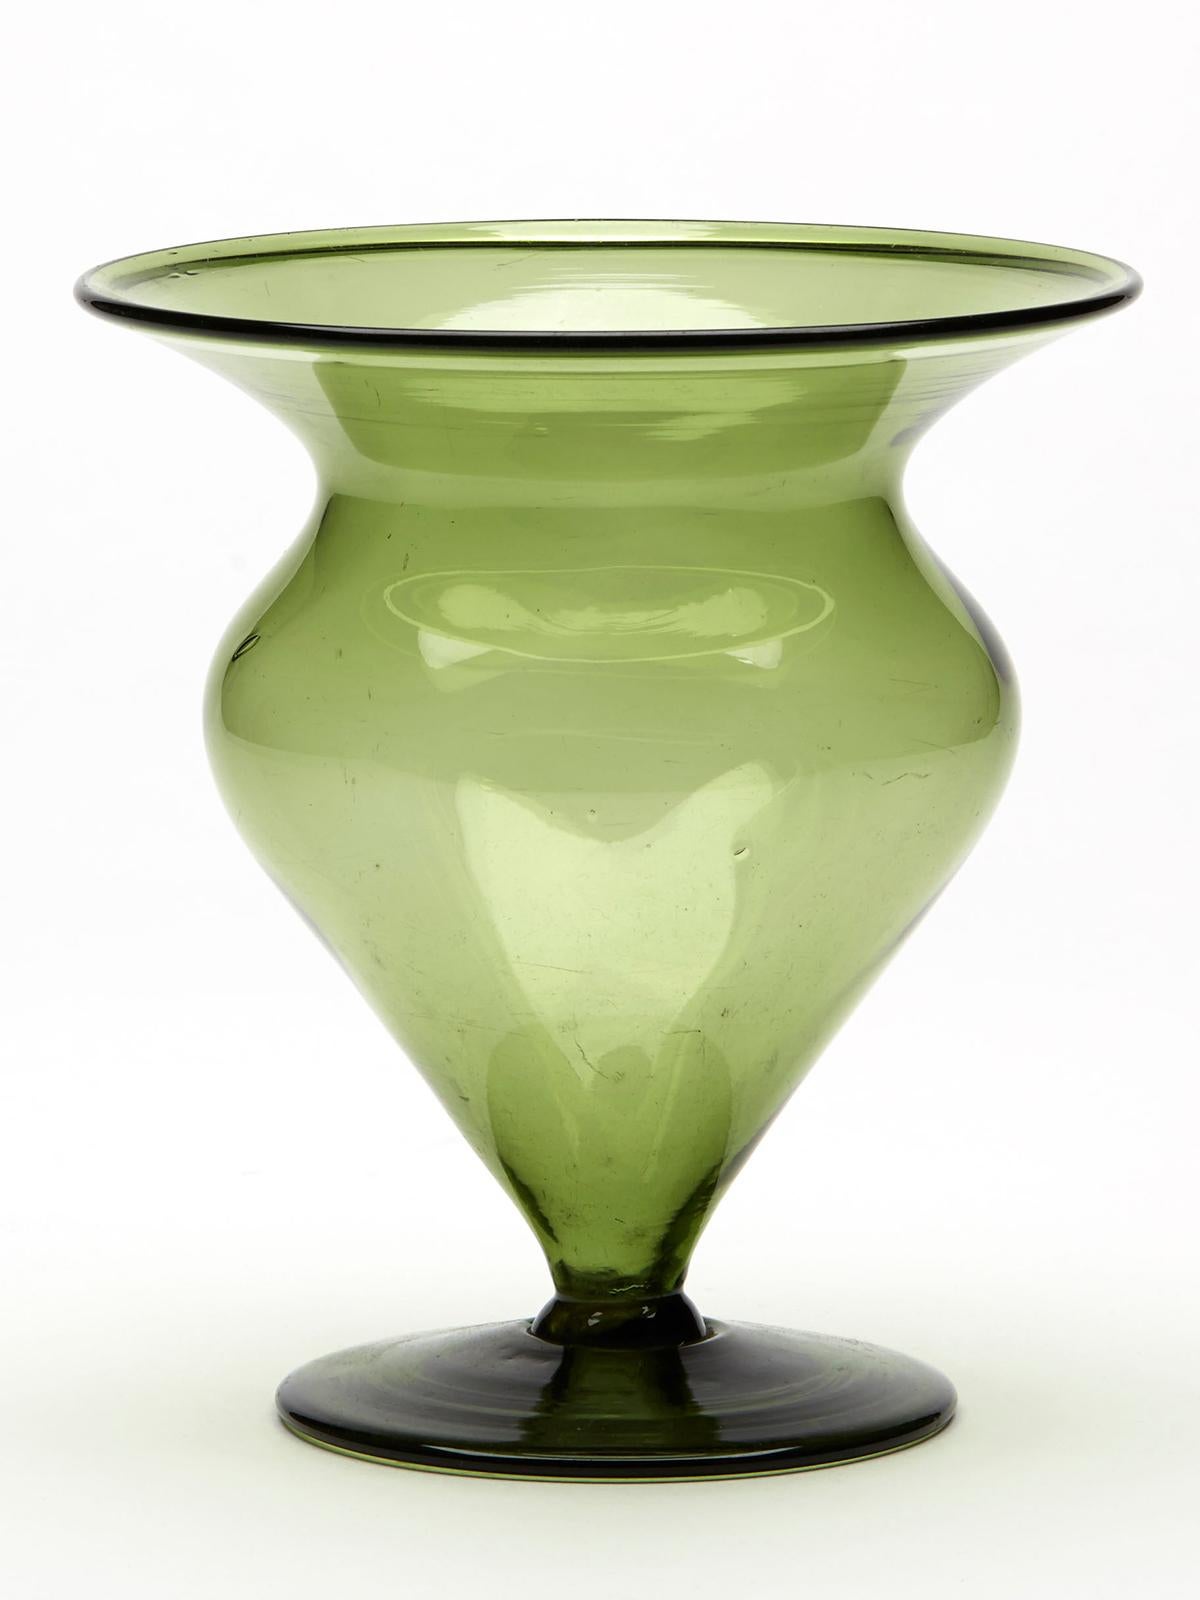 Eine absolut atemberaubende knospenförmige Kunstglasvase aus der Zeit um 1900, die dem bekannten Glasmacher Harry James Powell (Brite, 1853 - 1922) zugeschrieben wird. Die Vase aus mundgeblasenem, grün getöntem Glas steht auf einem breiten, runden